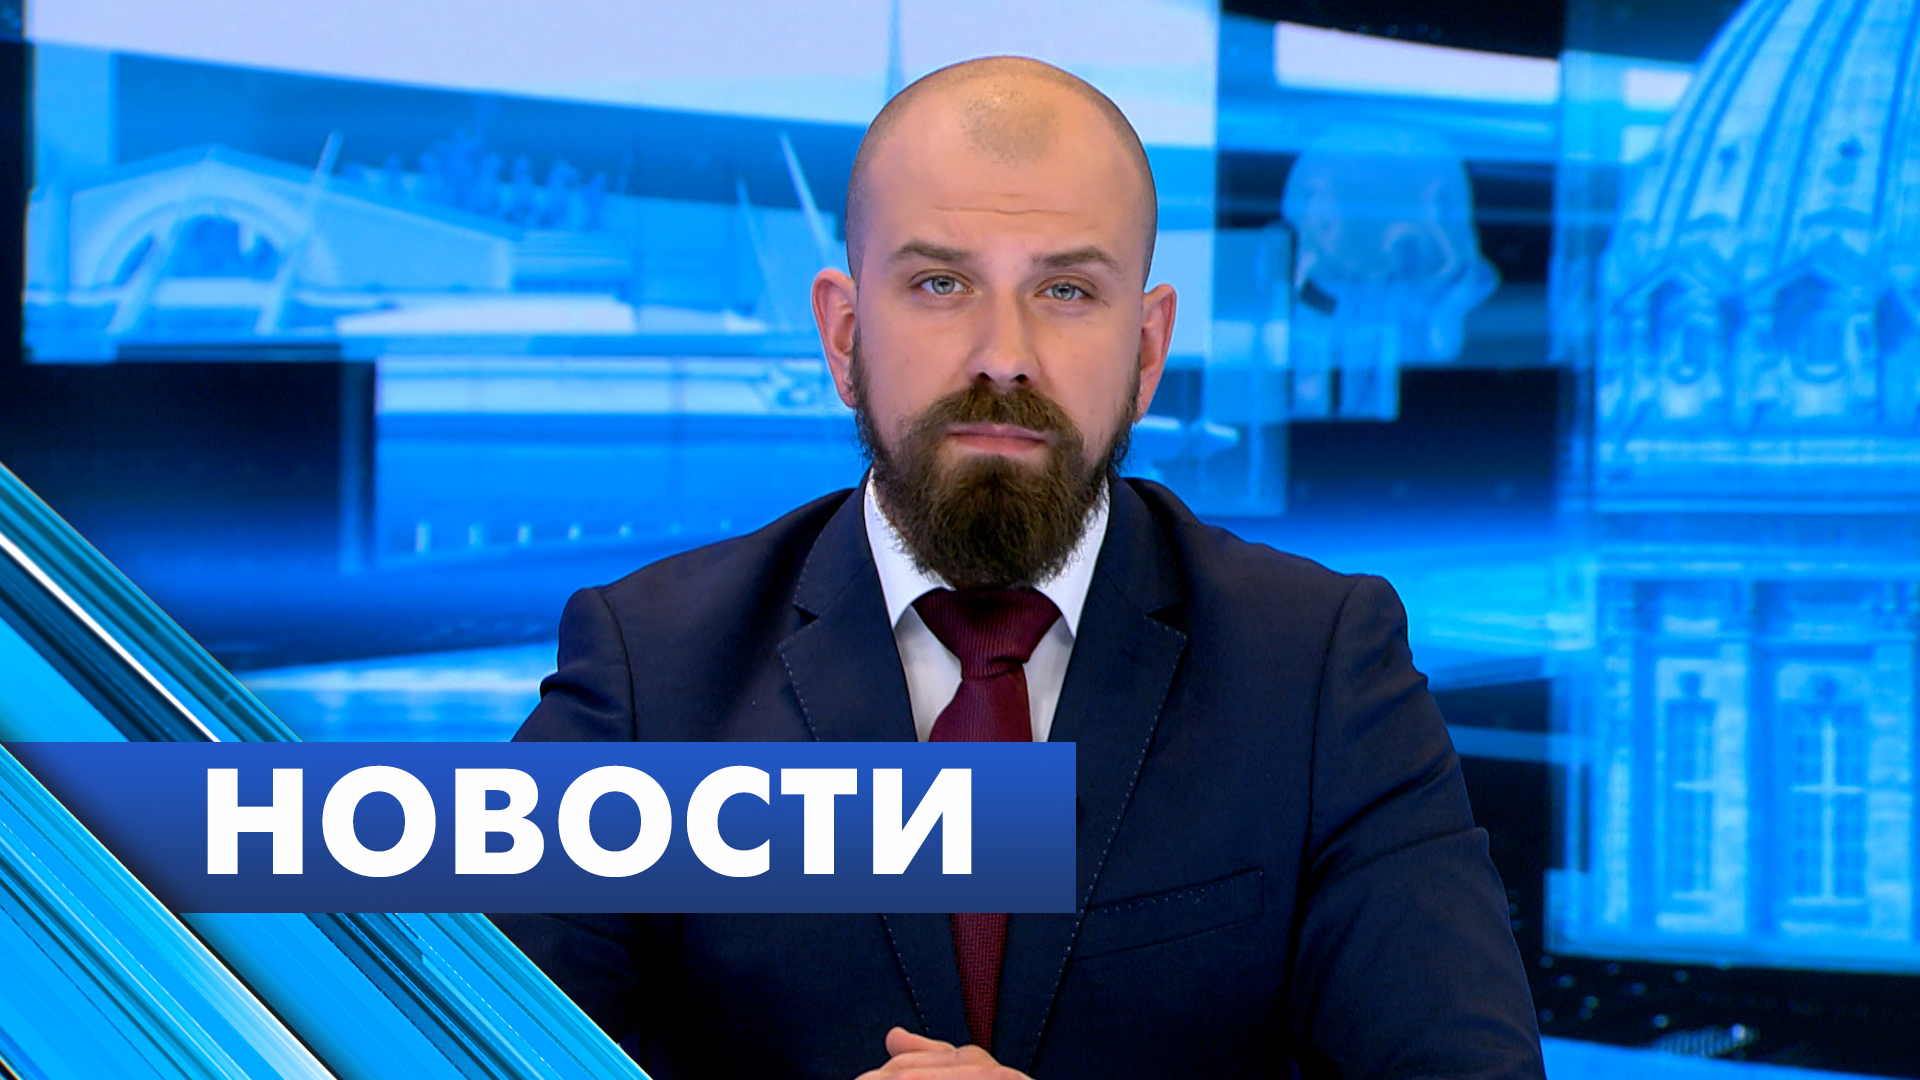 Главные новости Петербурга / 24 апреля